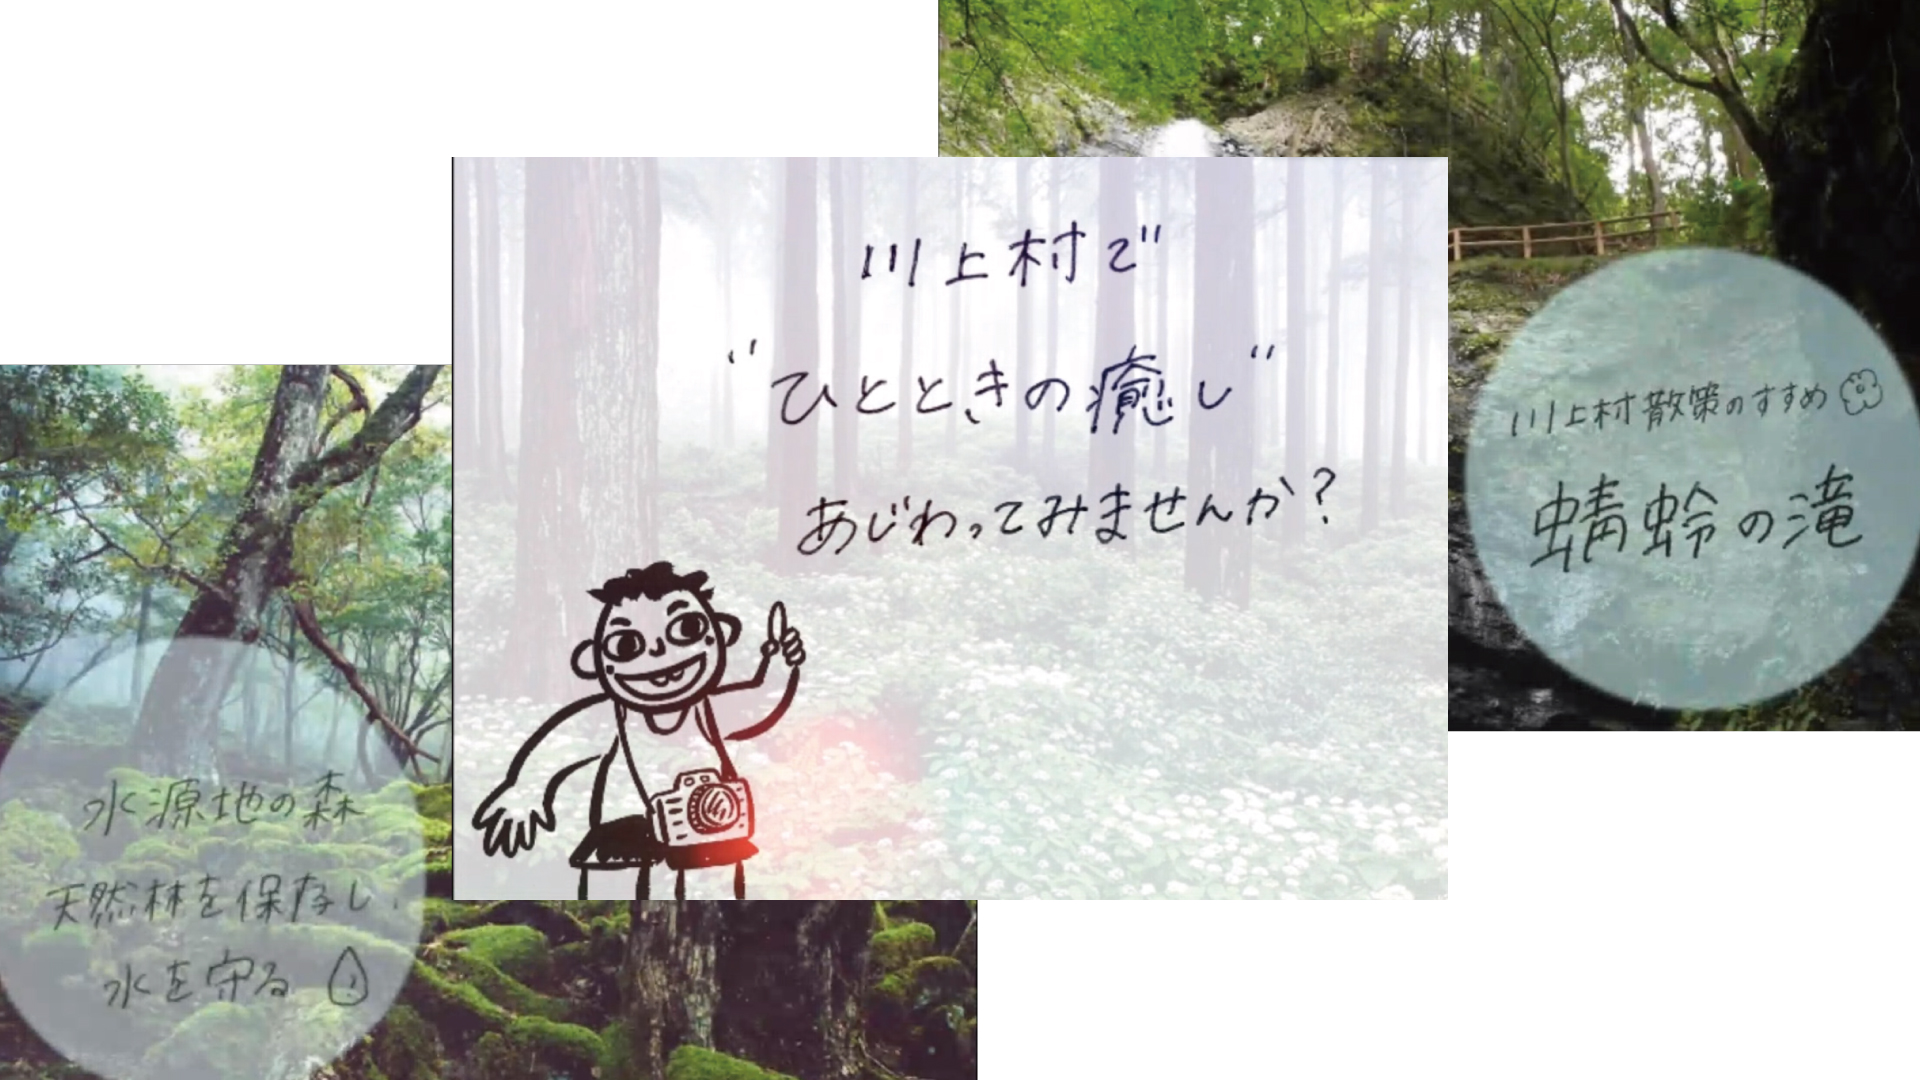 手書きの文字で川上村の魅力を伝える藤田さんの作品